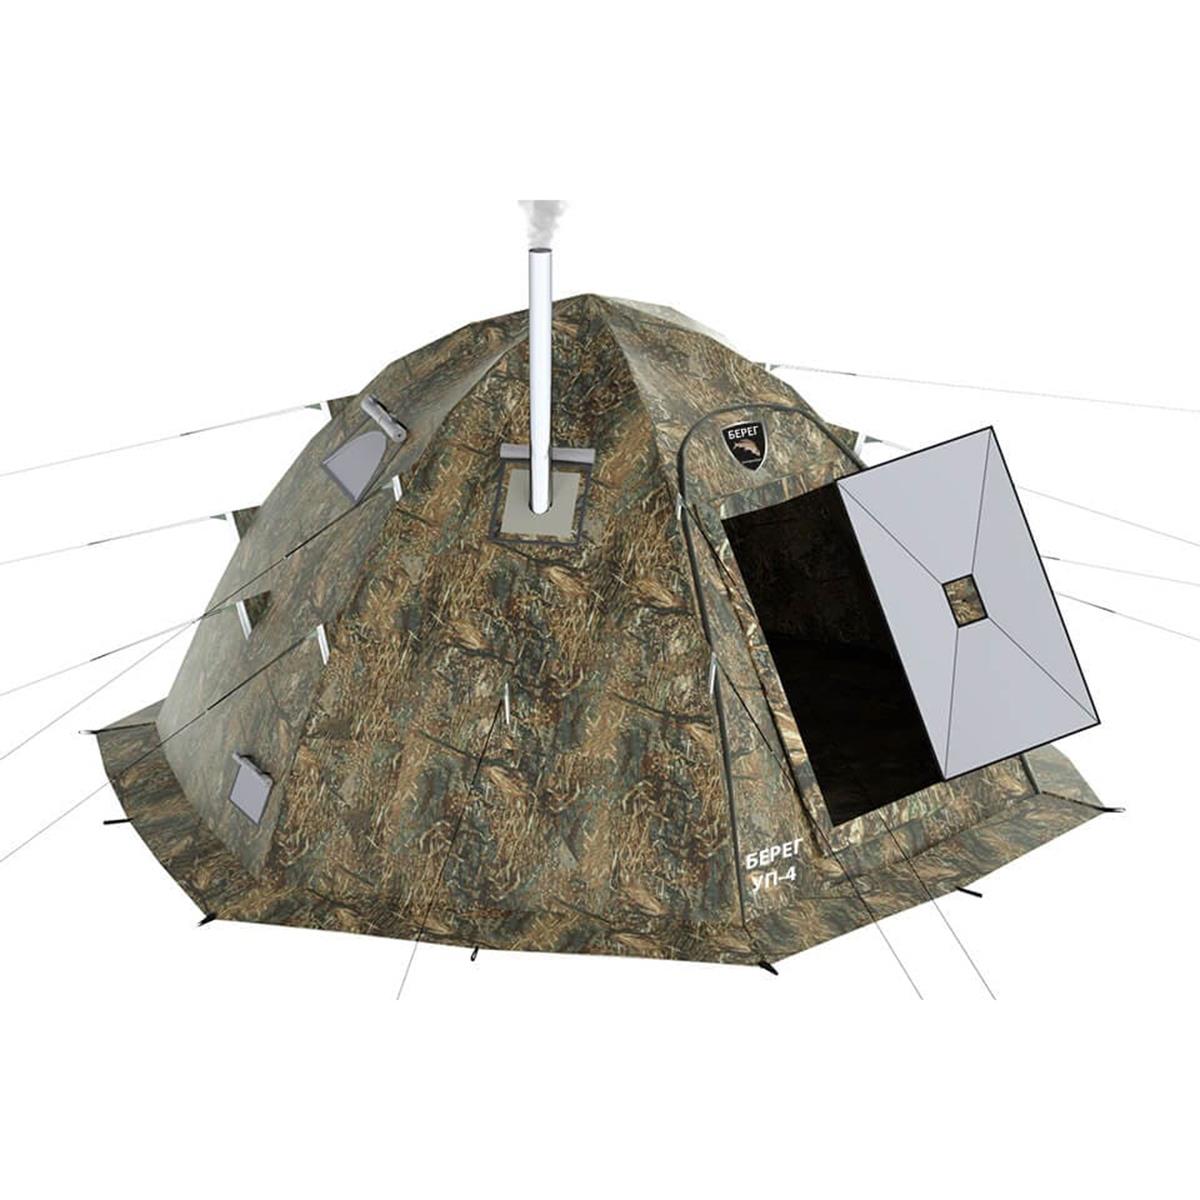 печь для зимней палатки универсальная пу 500m t hs pu500m helios Универсальная палатка УП-4 Камыш, Берег